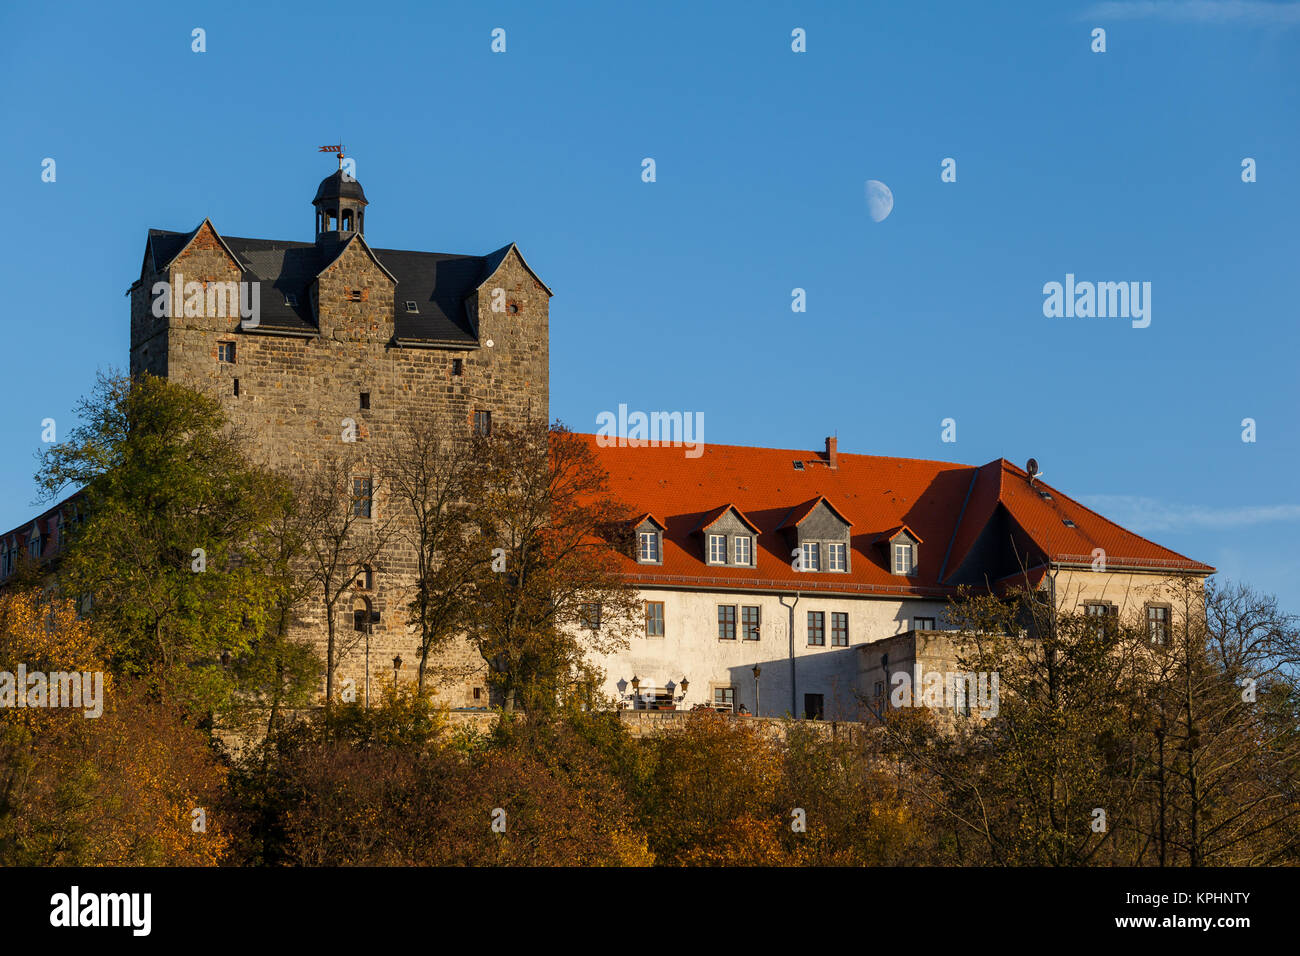 Schloss Ballenstedt im Harz Stock Photo - Alamy